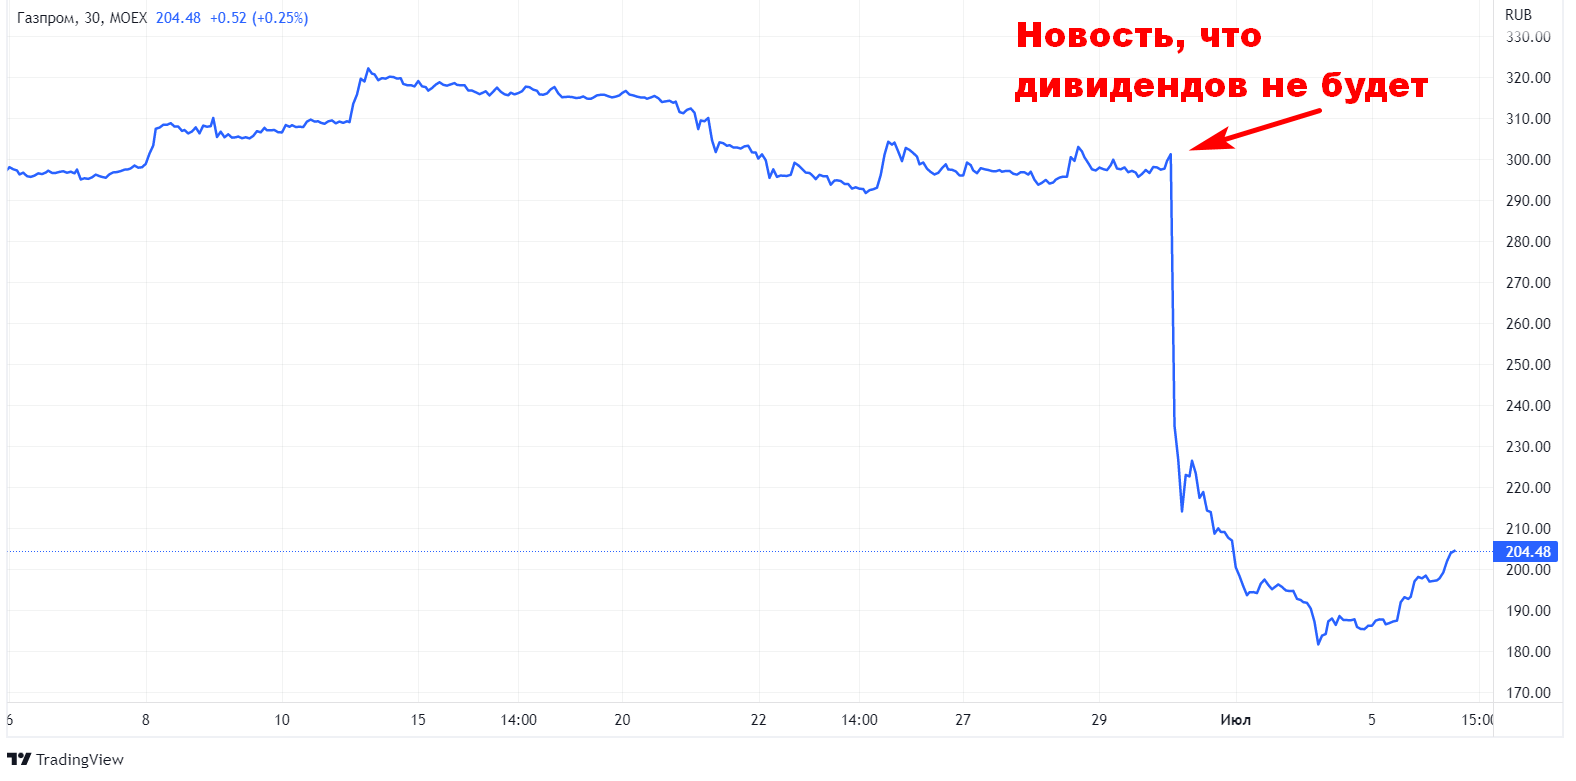 Как упали акции Газпрома после отмены дивидендов